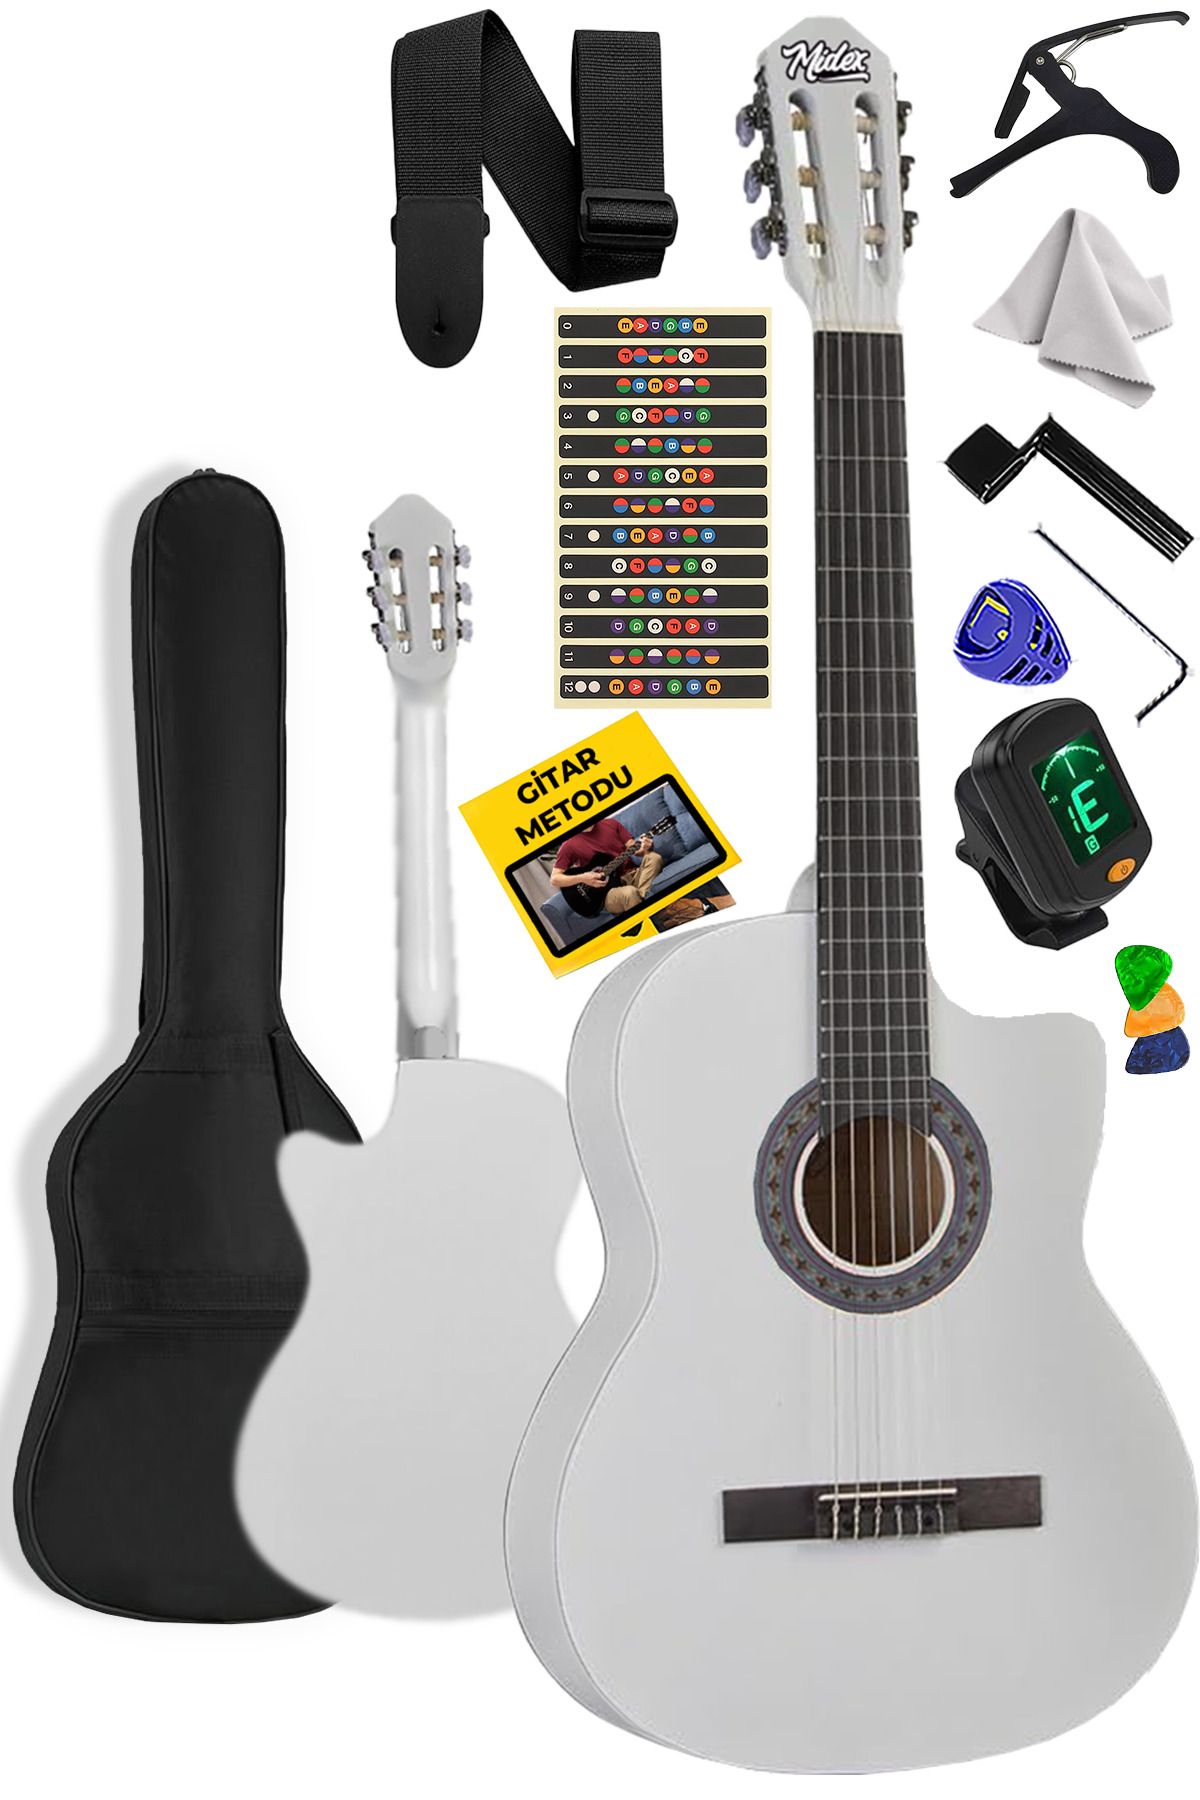 Midex Cg-395wh Beyaz Renk Kesik Klasik Gitar 4/4 Yetişkin Boy Sap Ayarlı Full Set